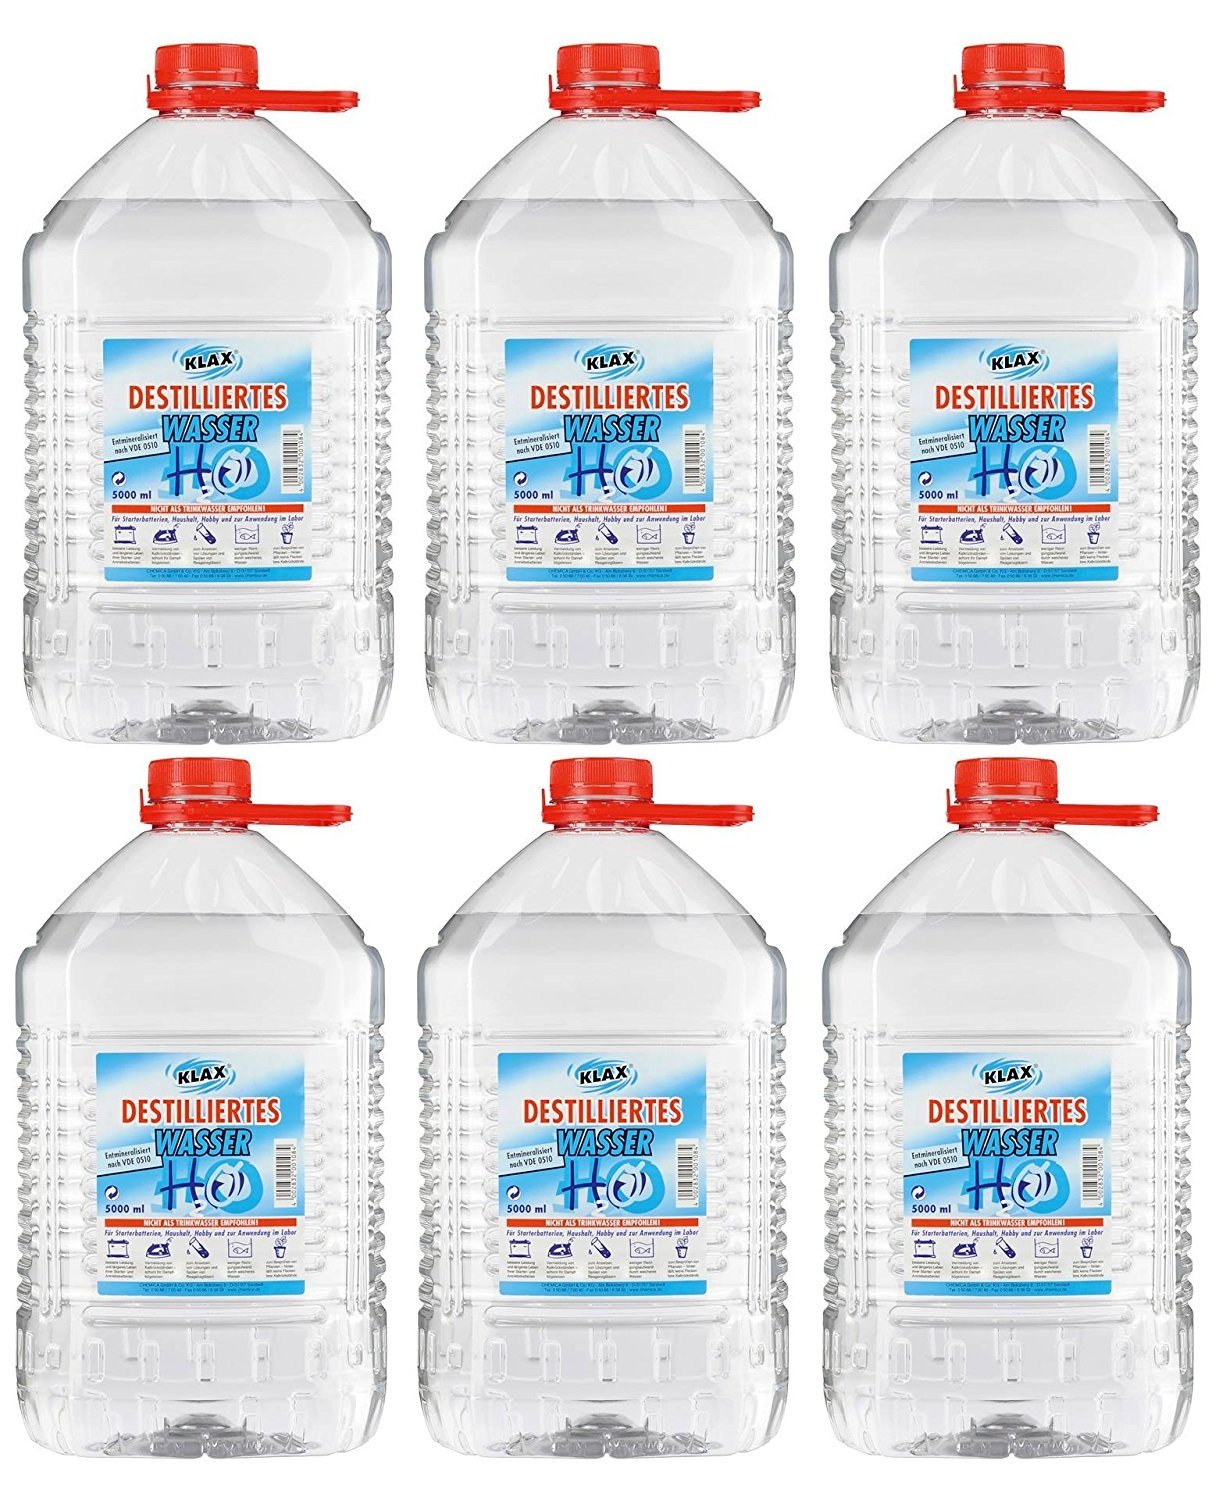 VECARO Destilliertes Wasser 30 Liter 6 Kanister zu je 5 Liter von Chemica